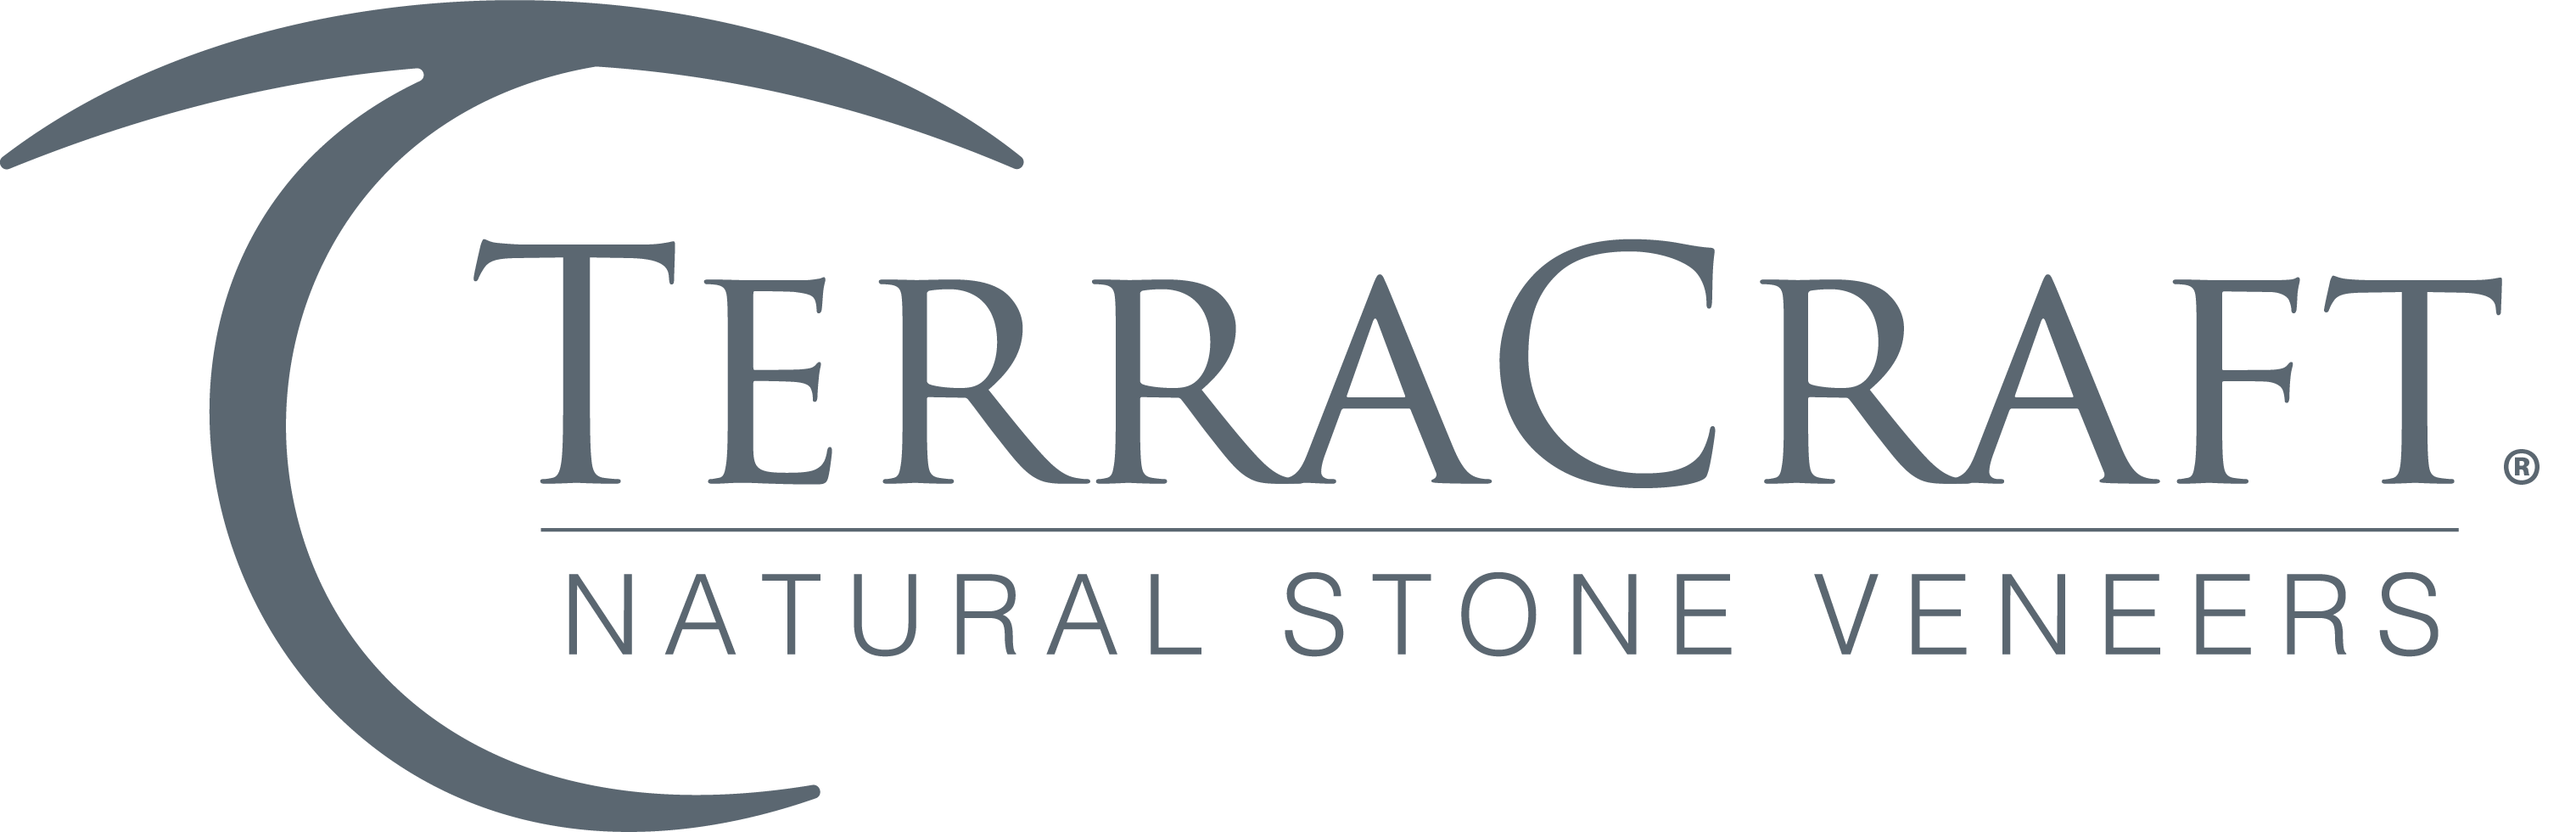 TerraCraft® Natural Stone Veneers